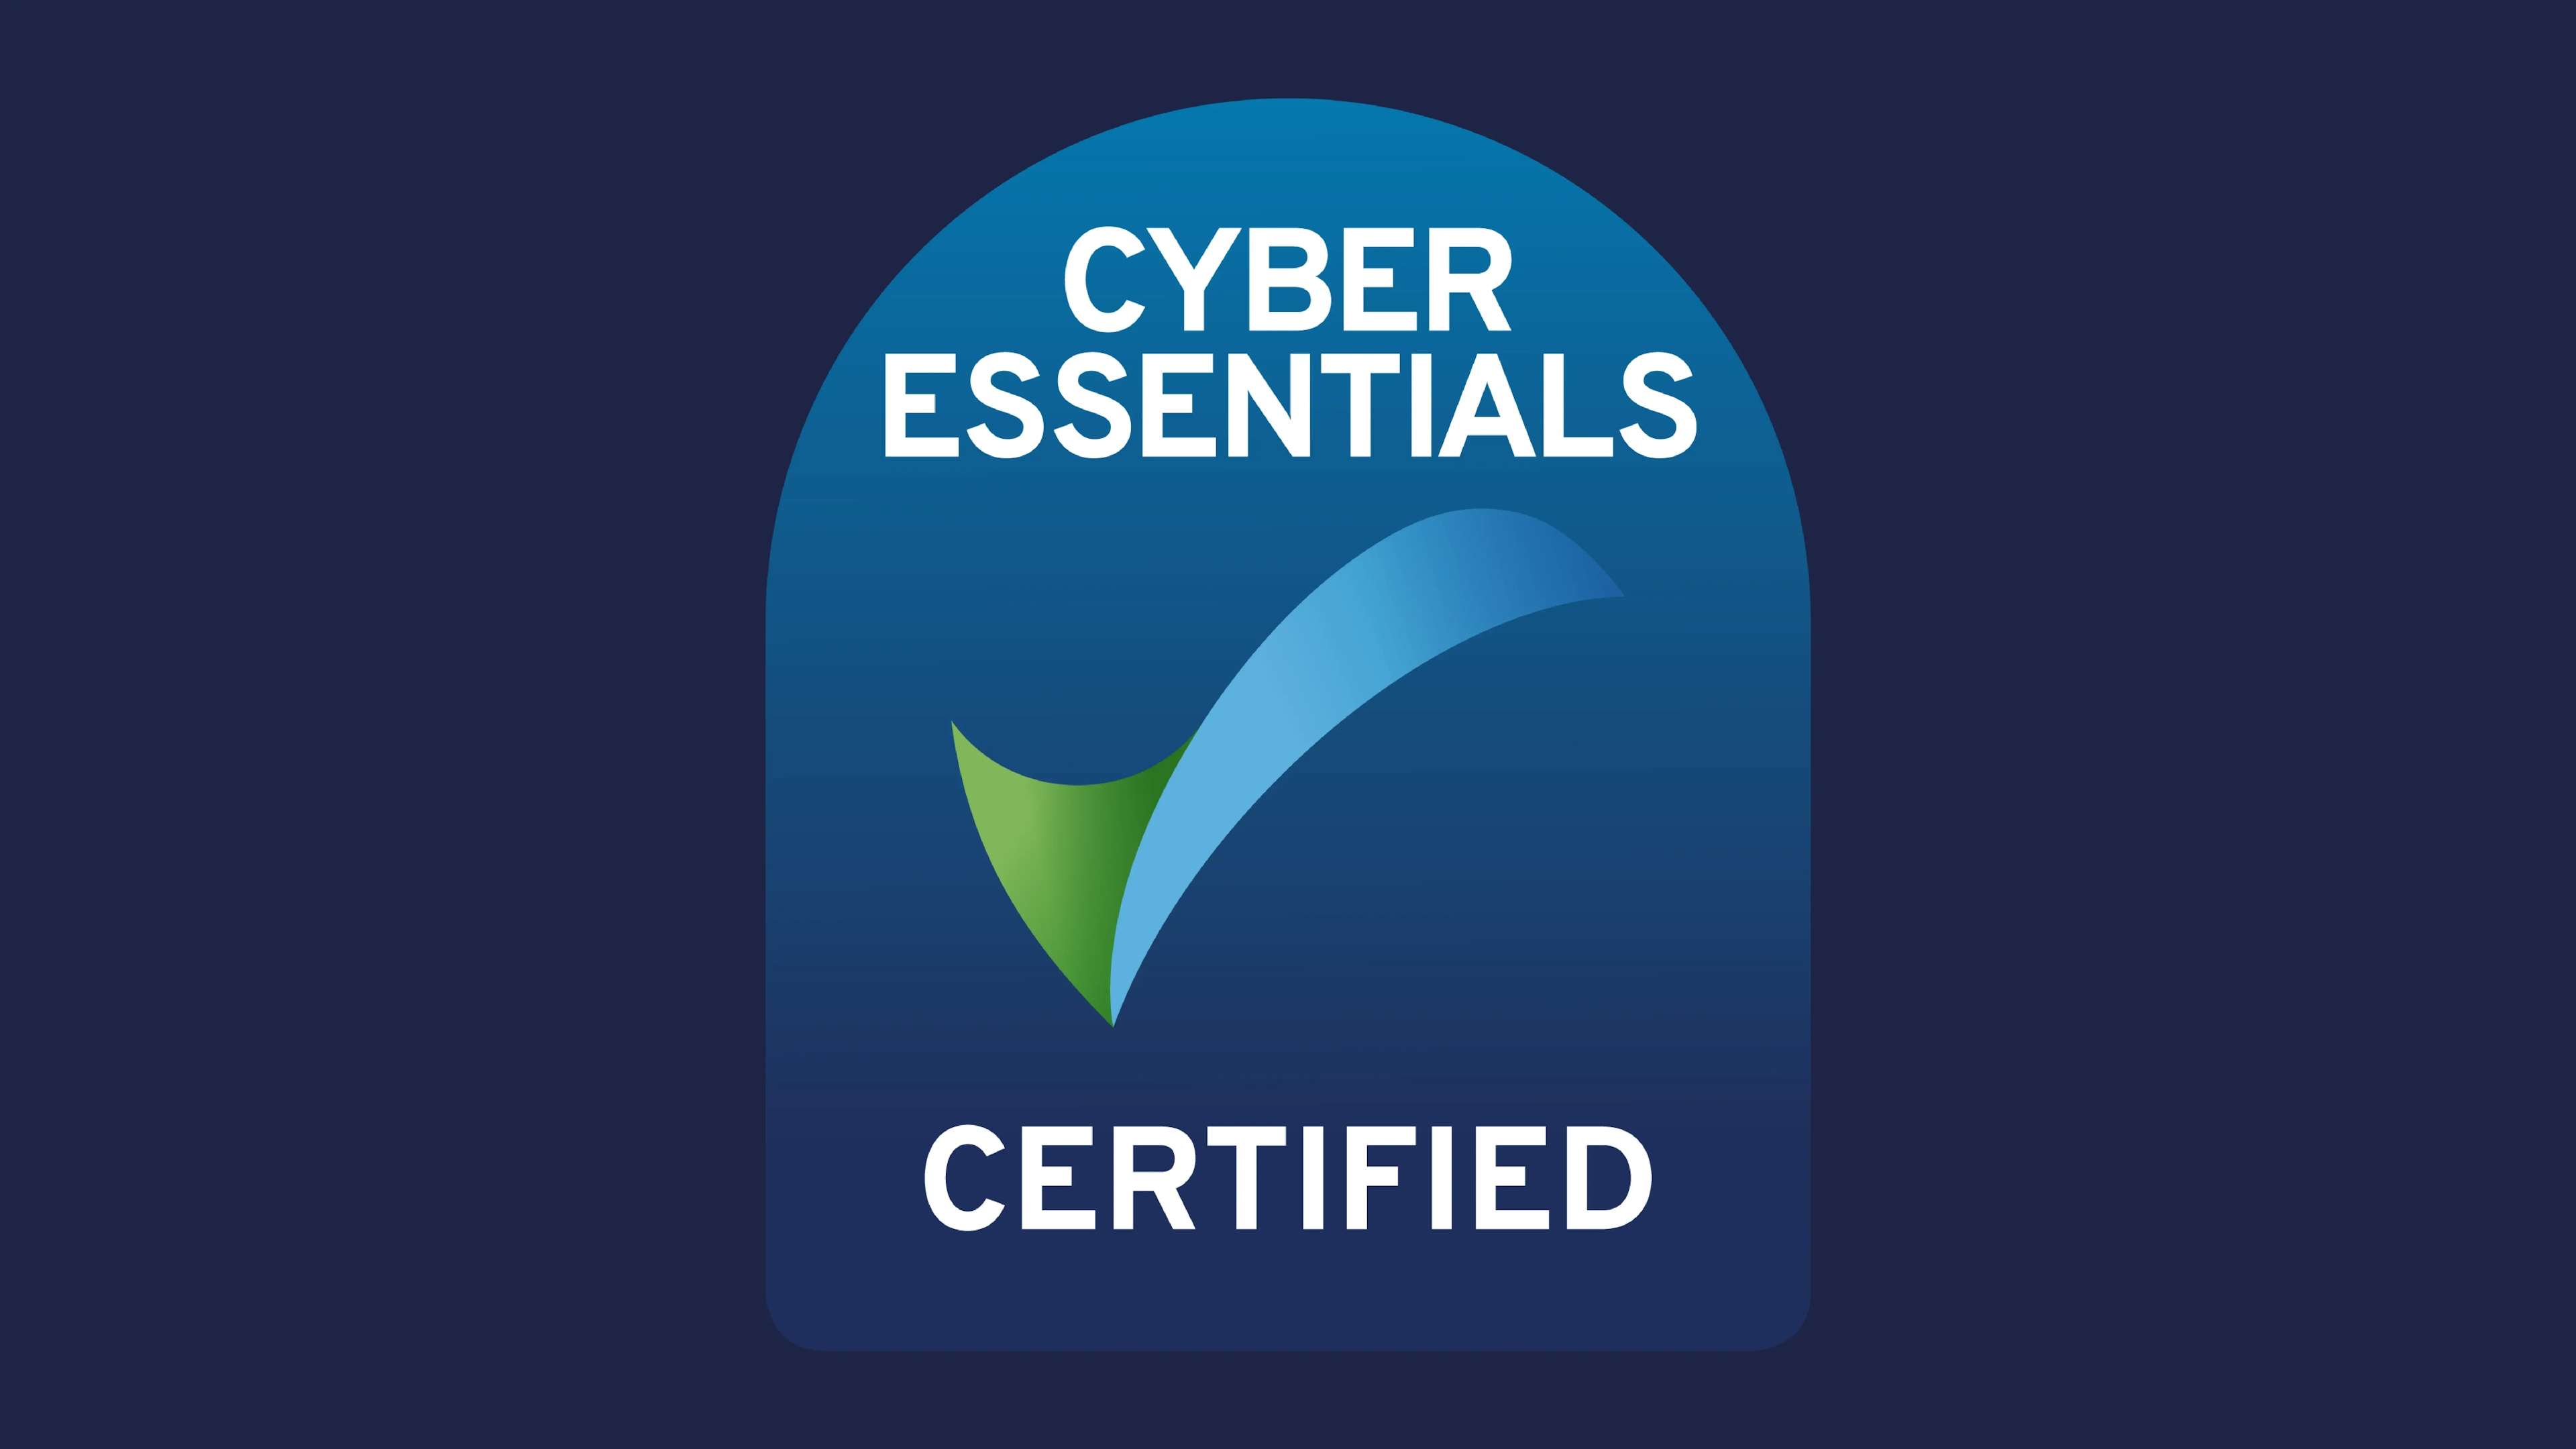 Cyber Essentials certificate logo